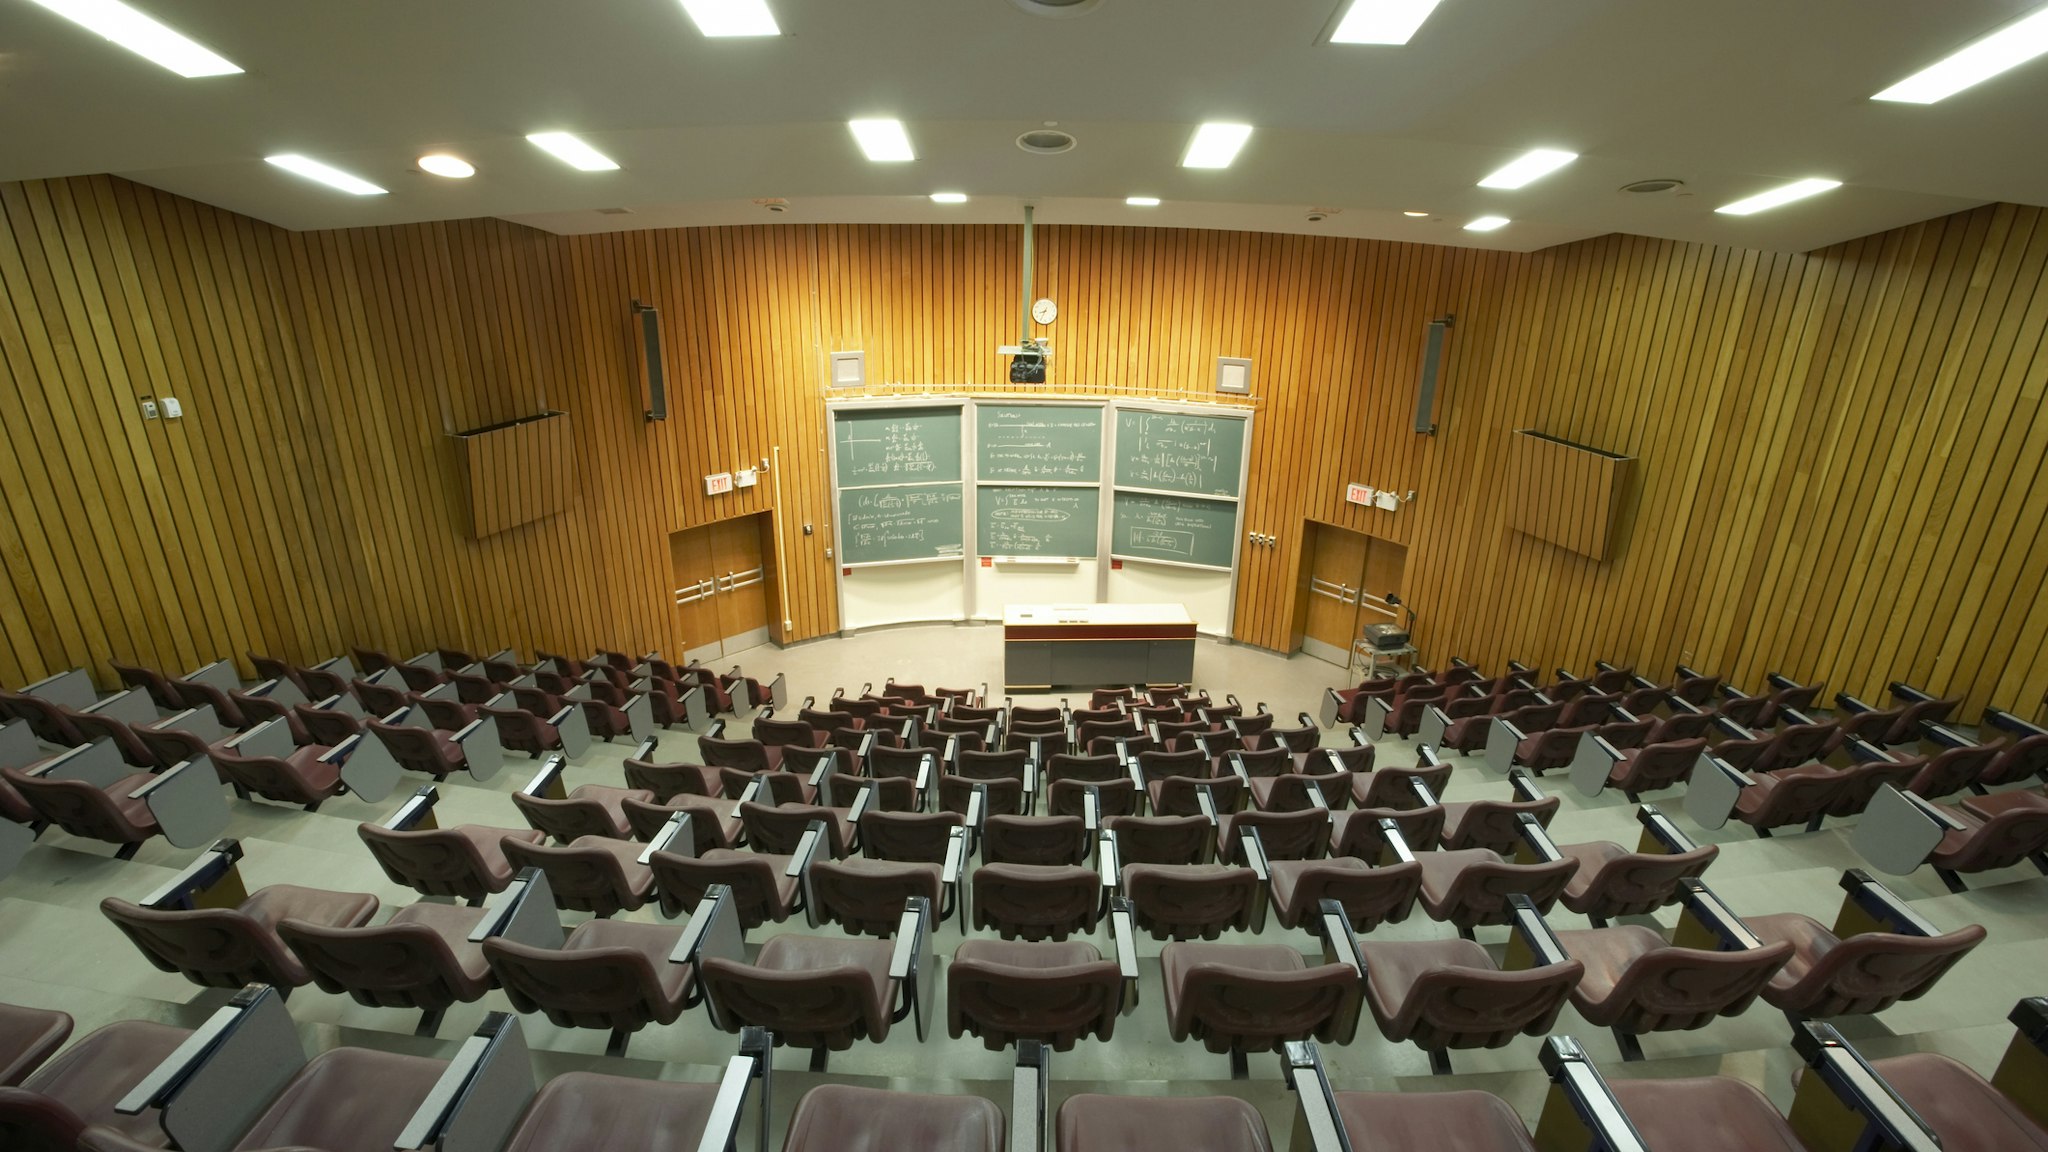 Empty auditorium - stock photo